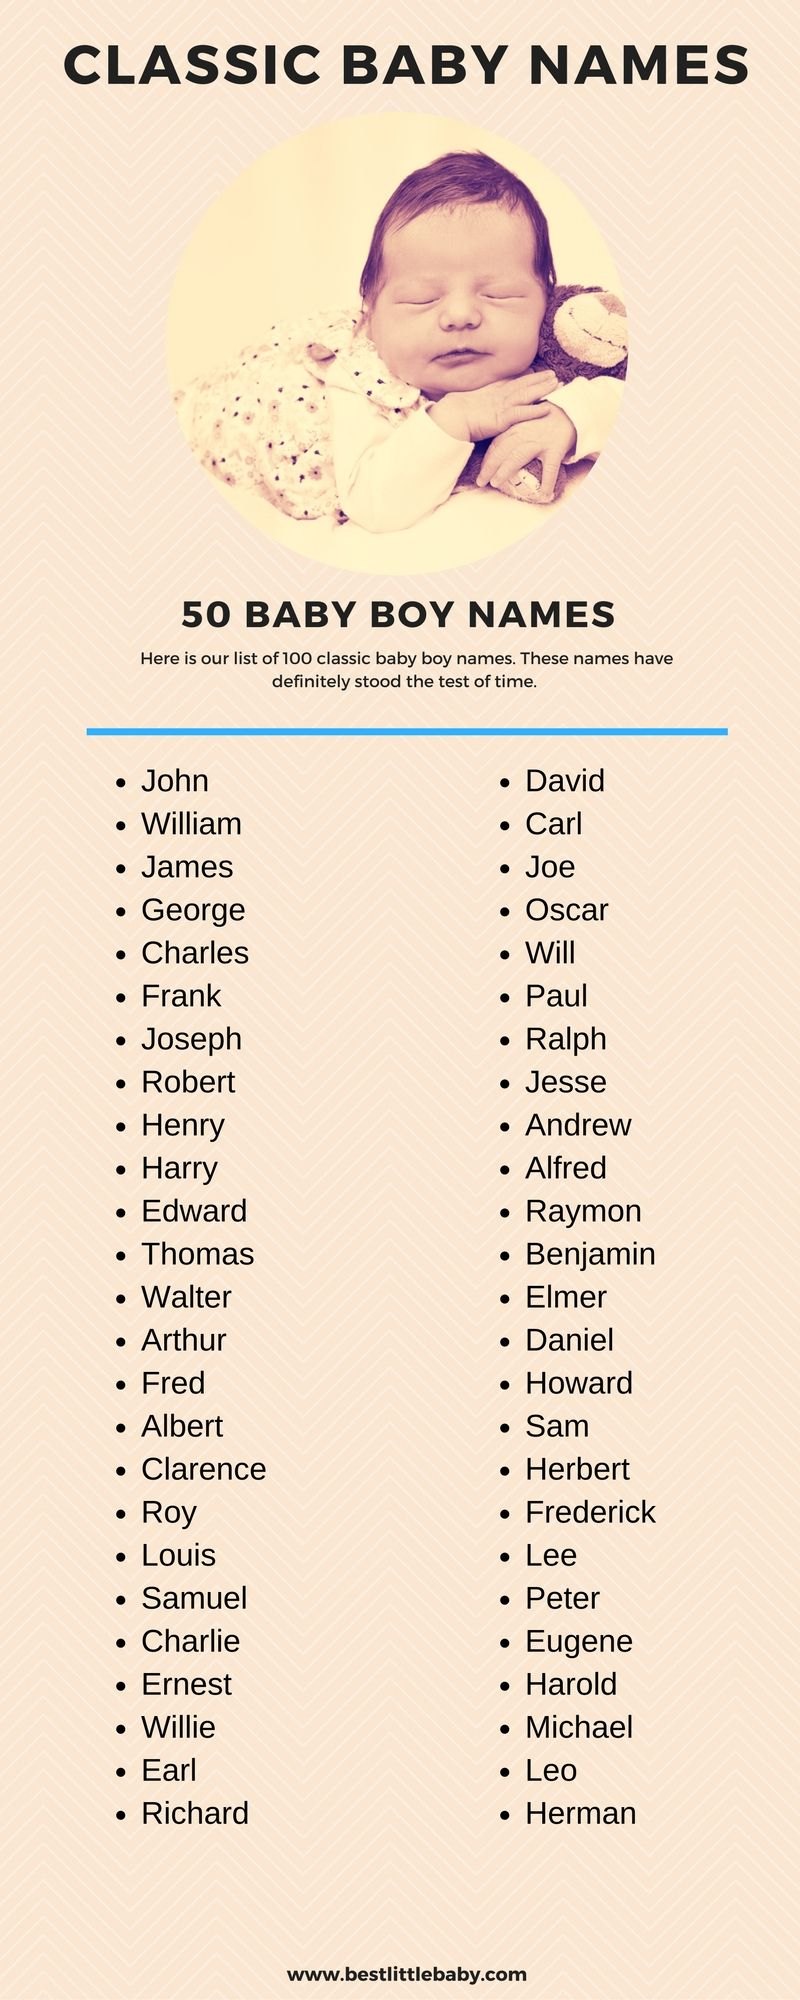 Имена для мальчиков красивые и современные. Красивые имена для мальчиков. Самые красивые имена для мальчиков. Красивые имена для мальчиков современные. Интересные имена для мальчиков.